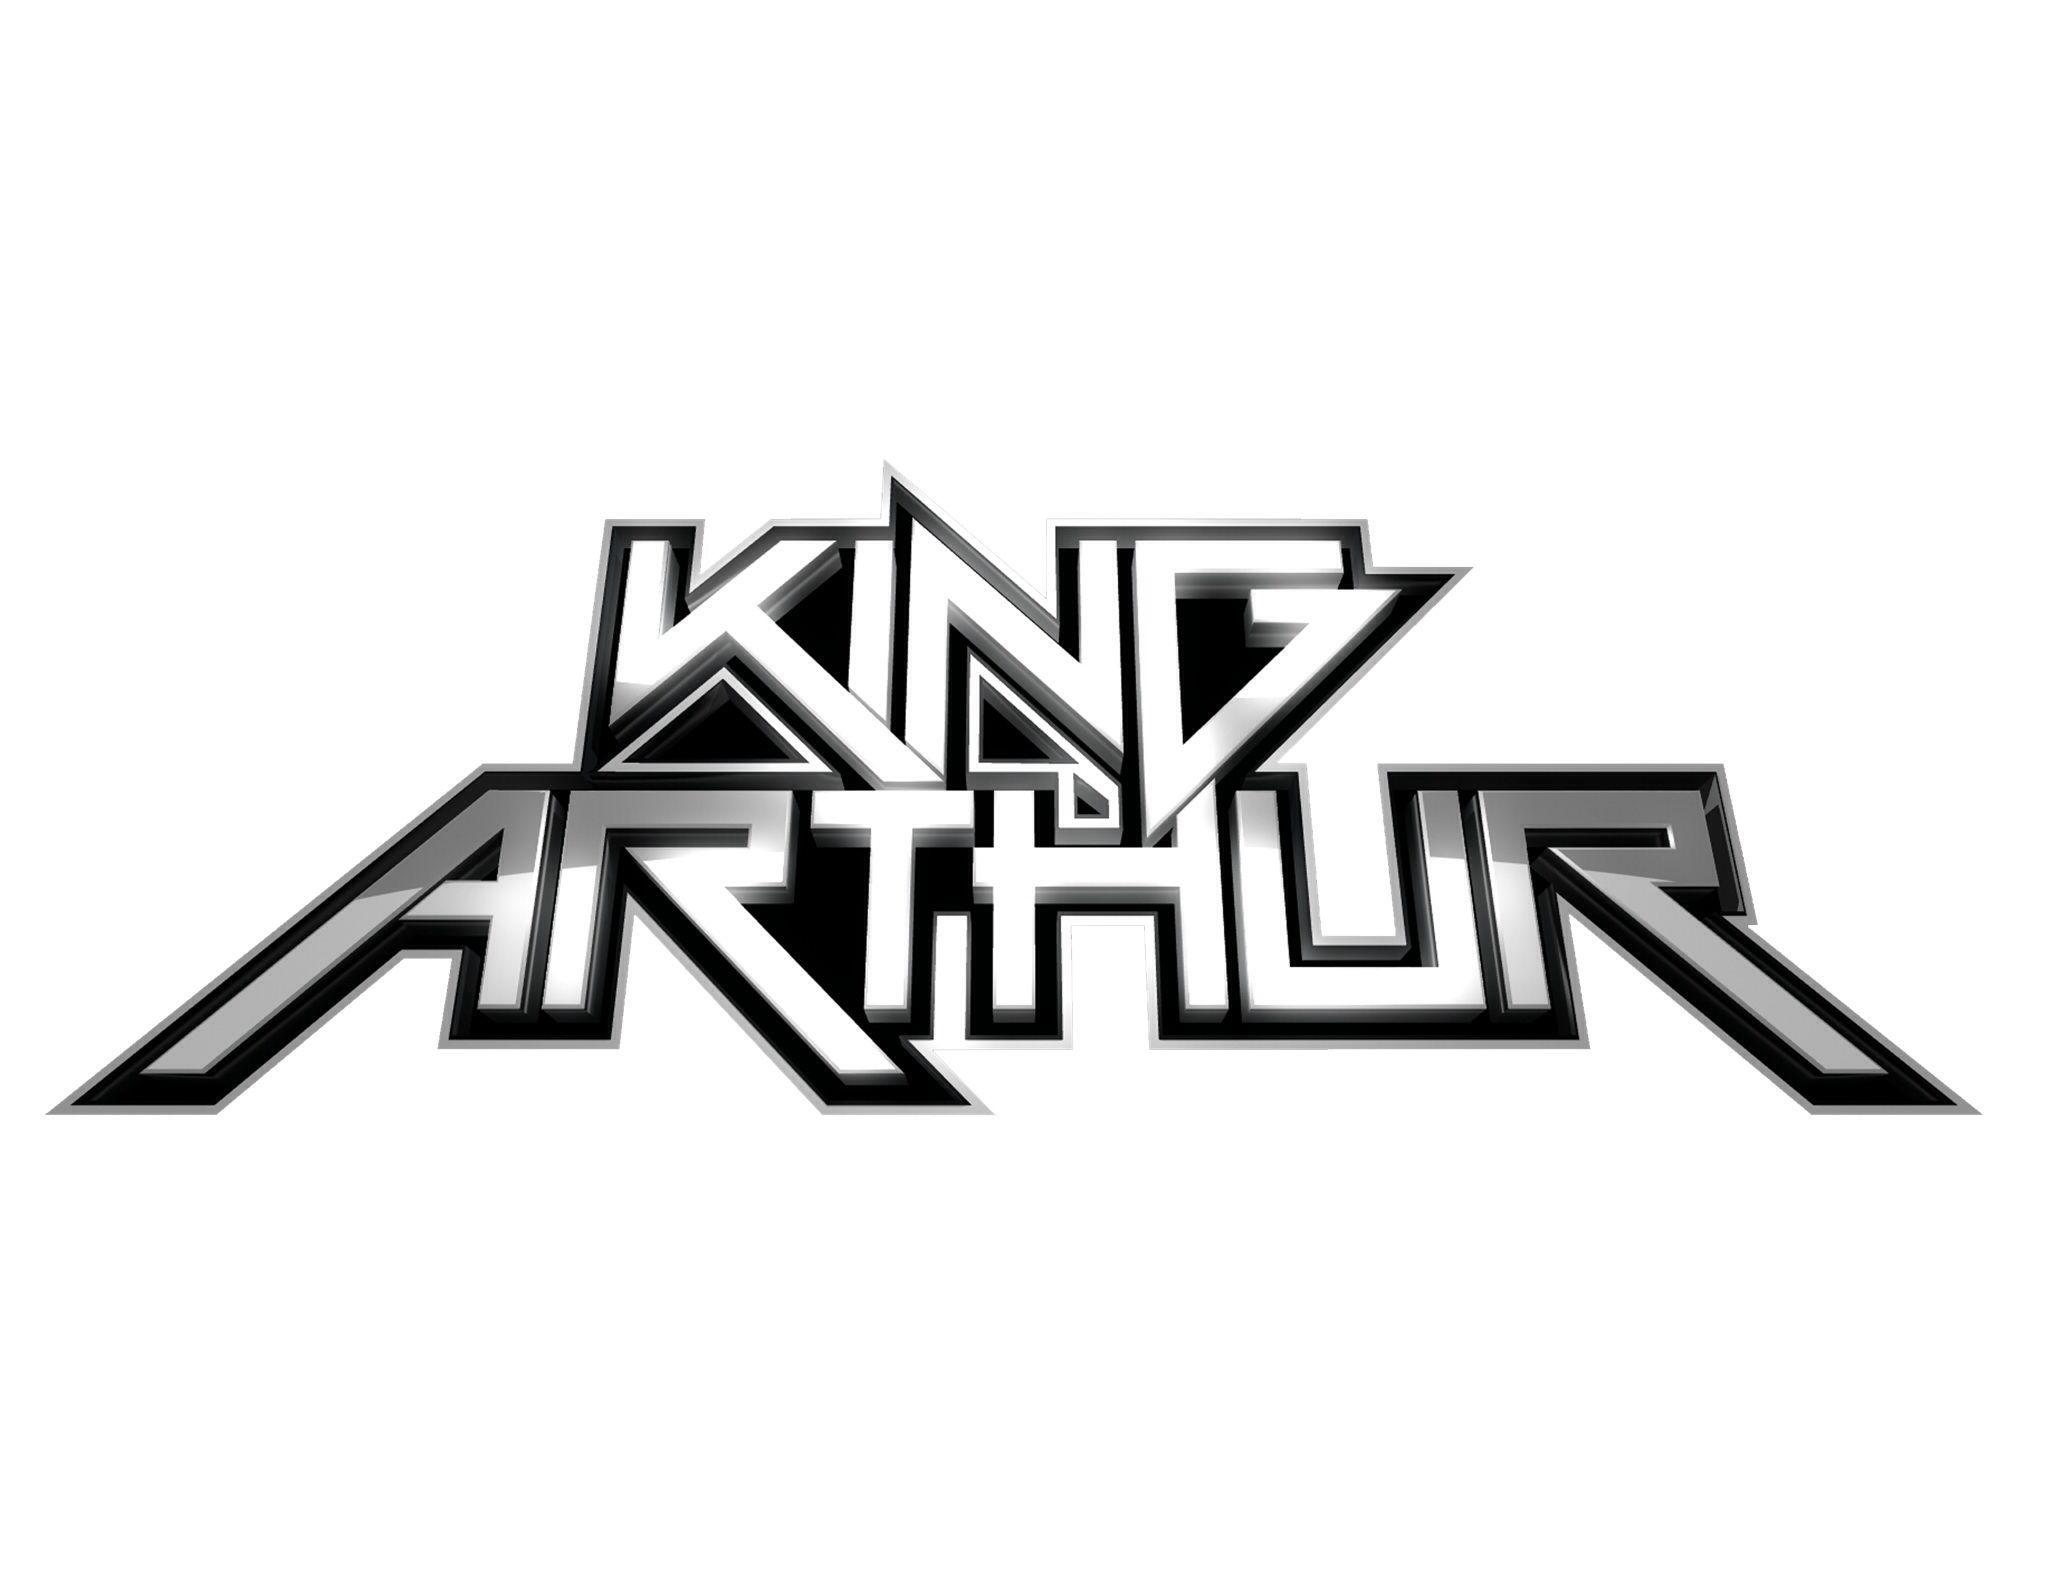 Arthur Logo - Dvj king arthur logos. Dvj king arthur logos. Logos, Company logo